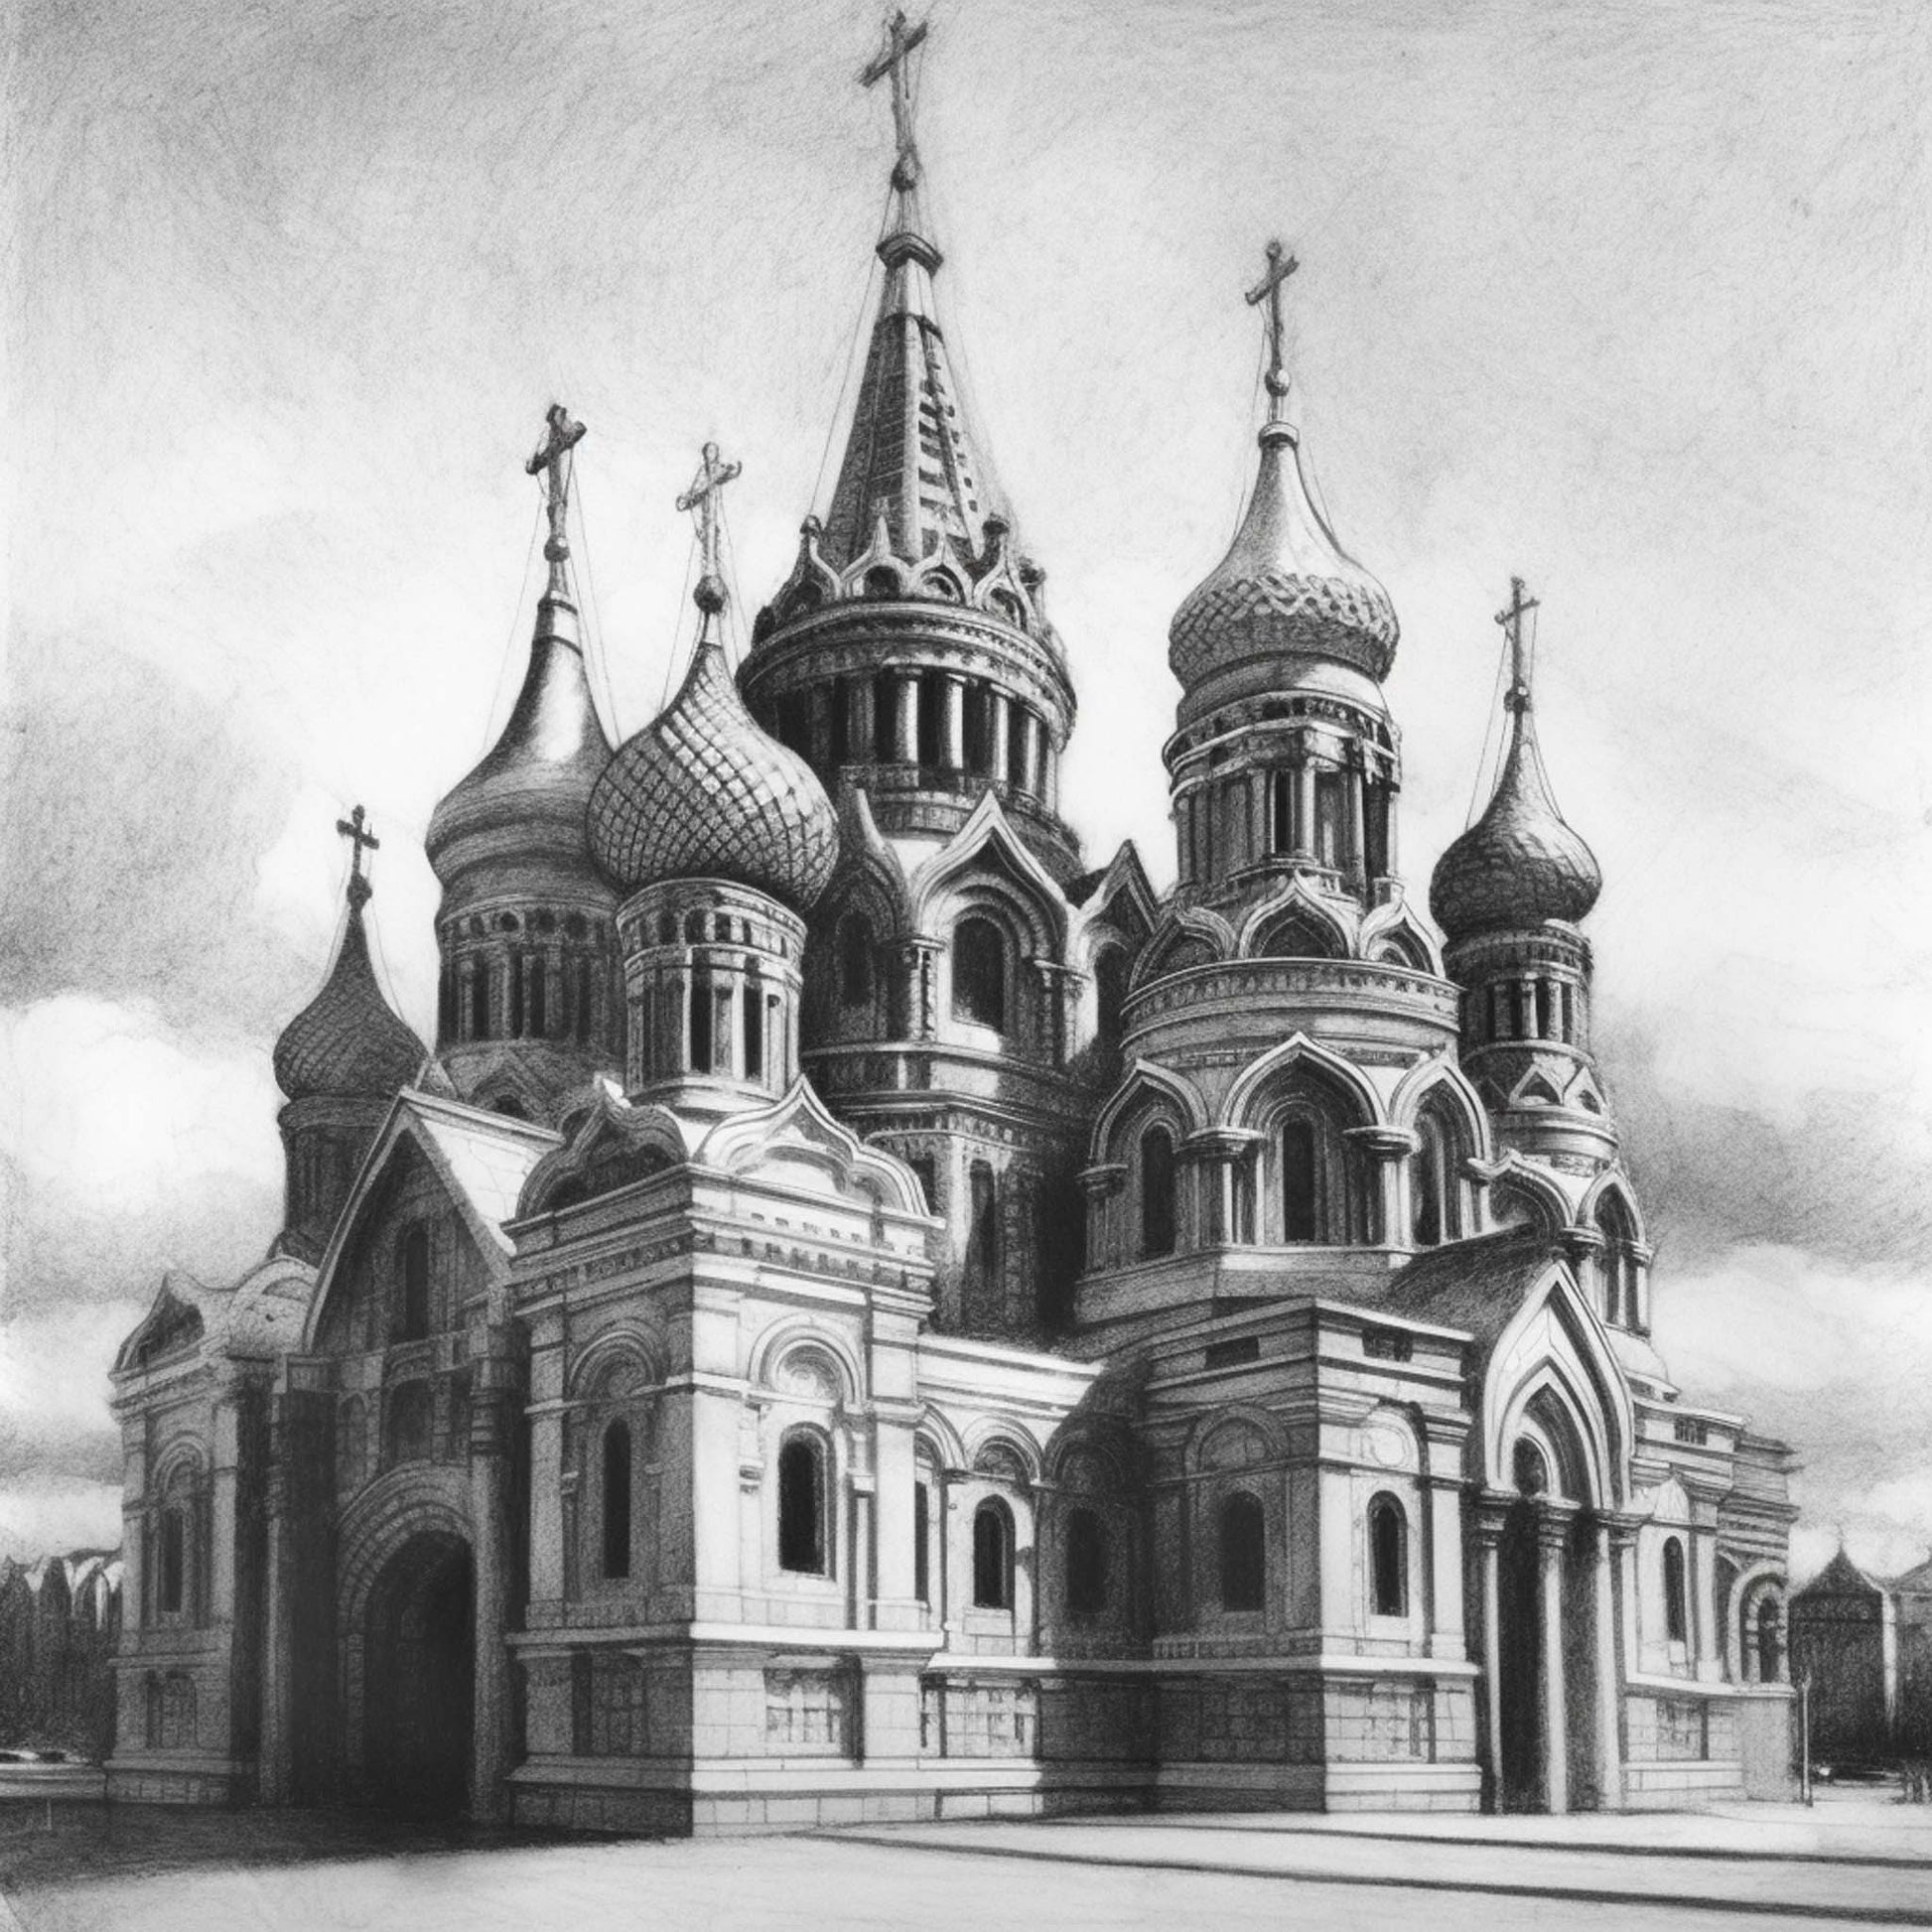 Urbanisto - Moskau Kreml - Wandbild als Schwarz-Weiß-Zeichnung